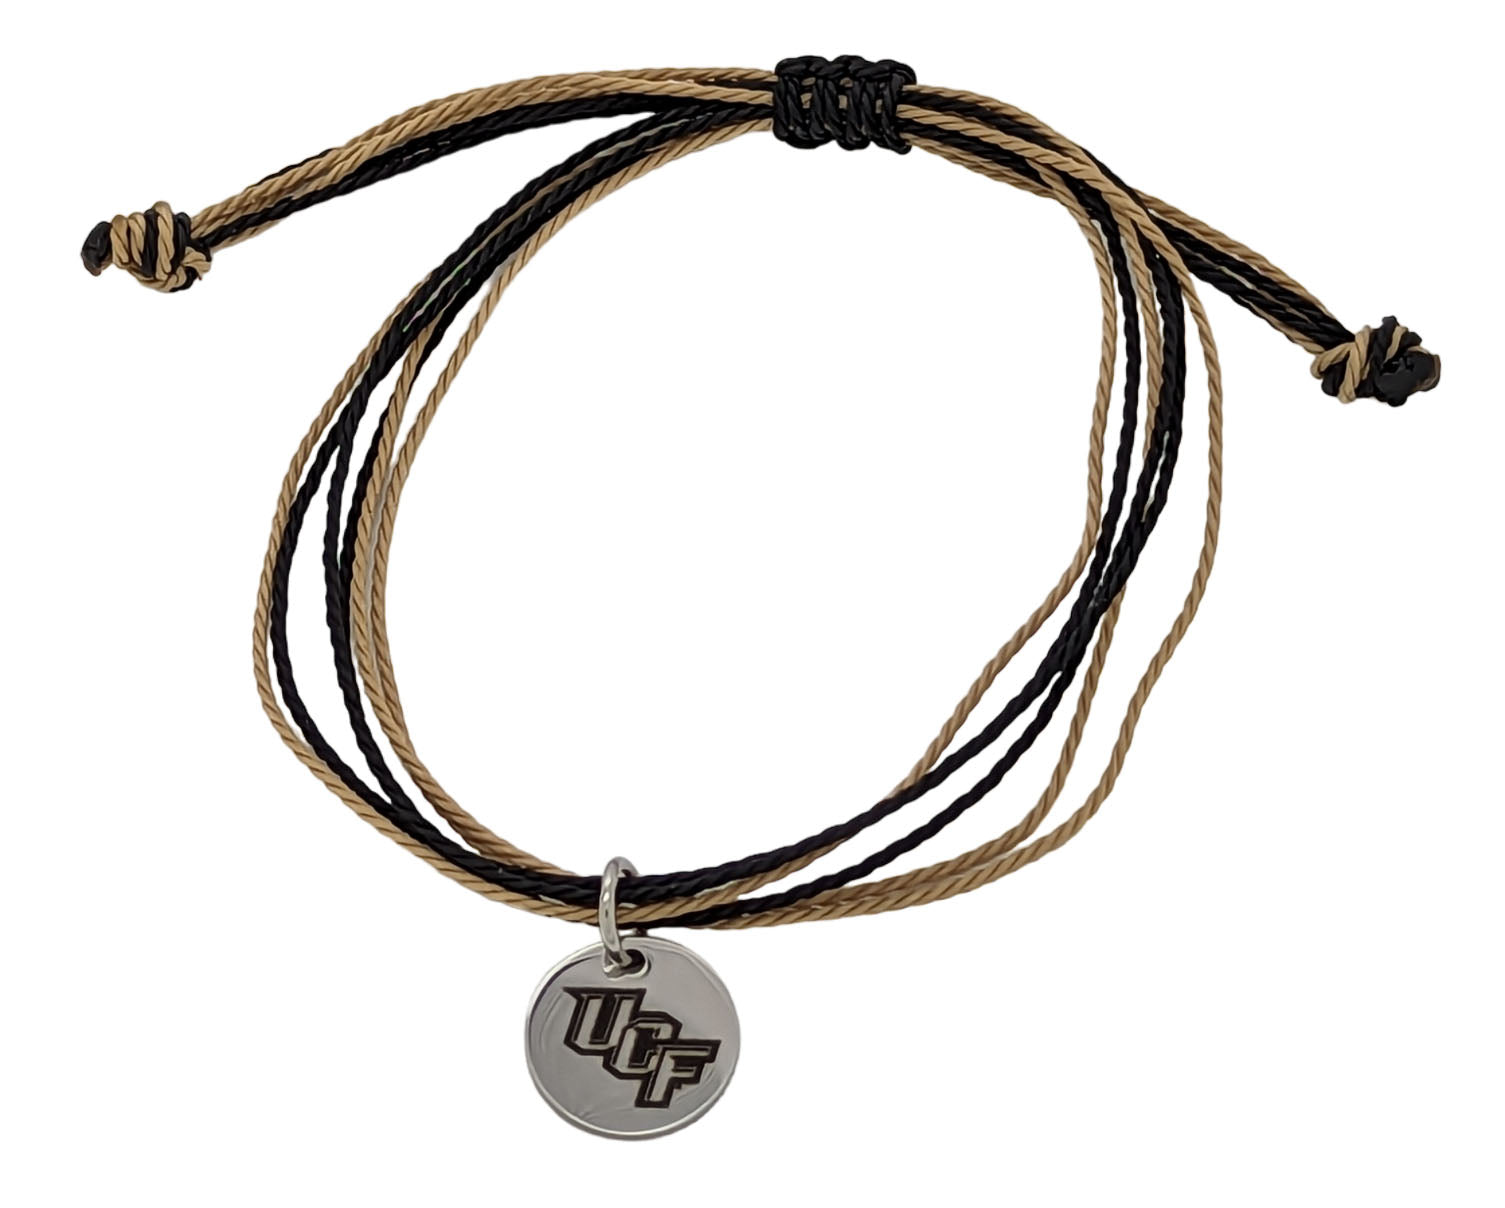 UCF Chain Link Bracelet